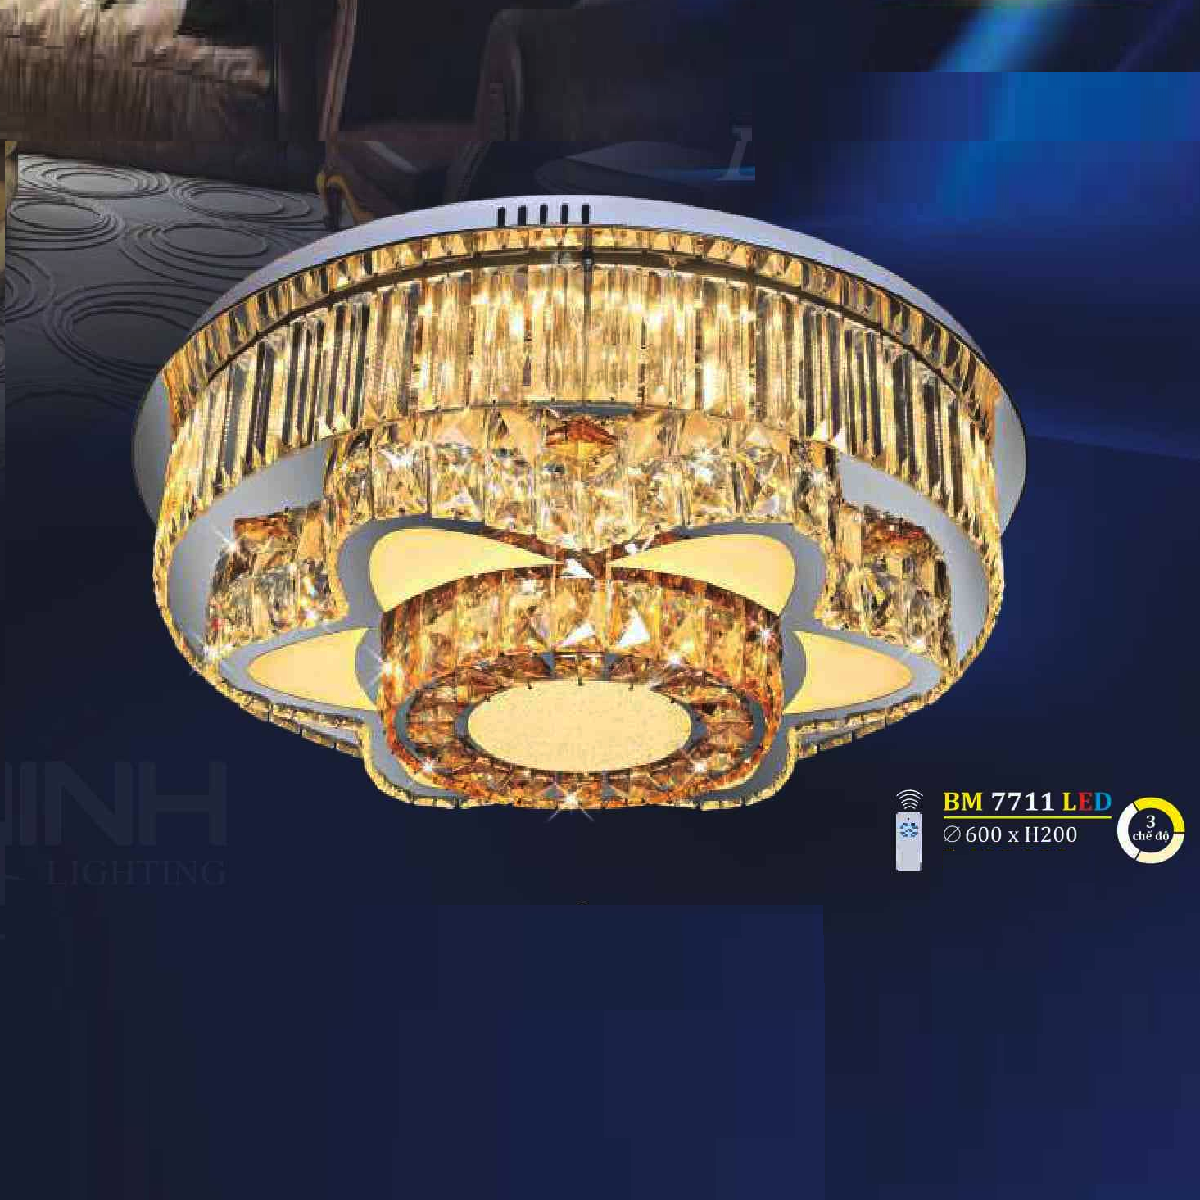 BM 7711 LED: Đèn áp trần LED - KT: Ø600mm x H200mm - Đèn LED đổi 3 màu - Remote